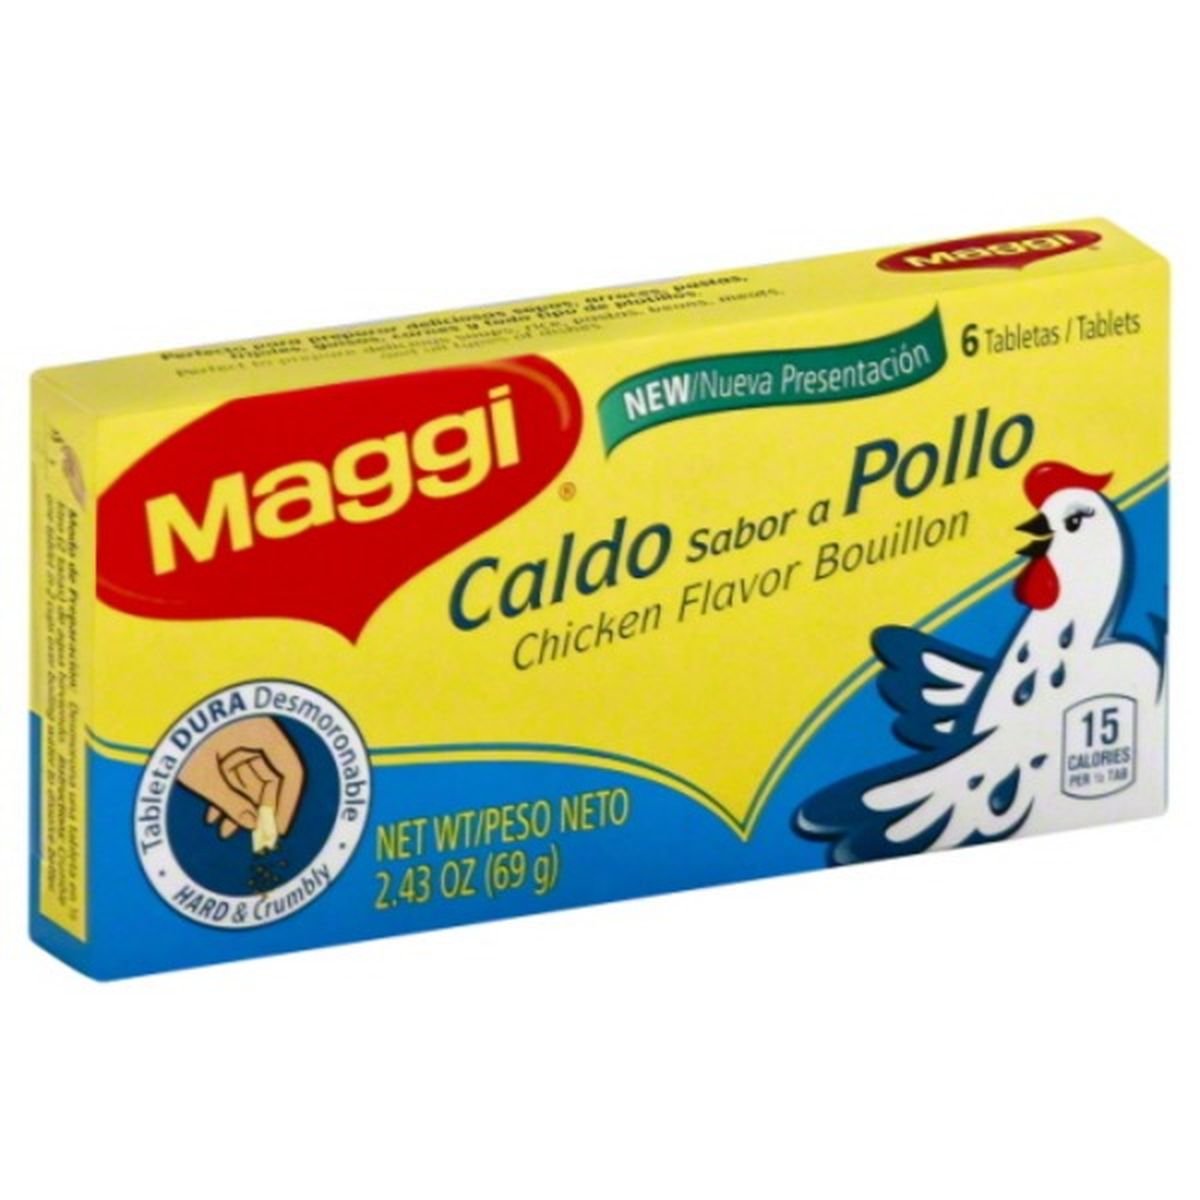 Calories in Maggi Bouillon, Chicken Flavor